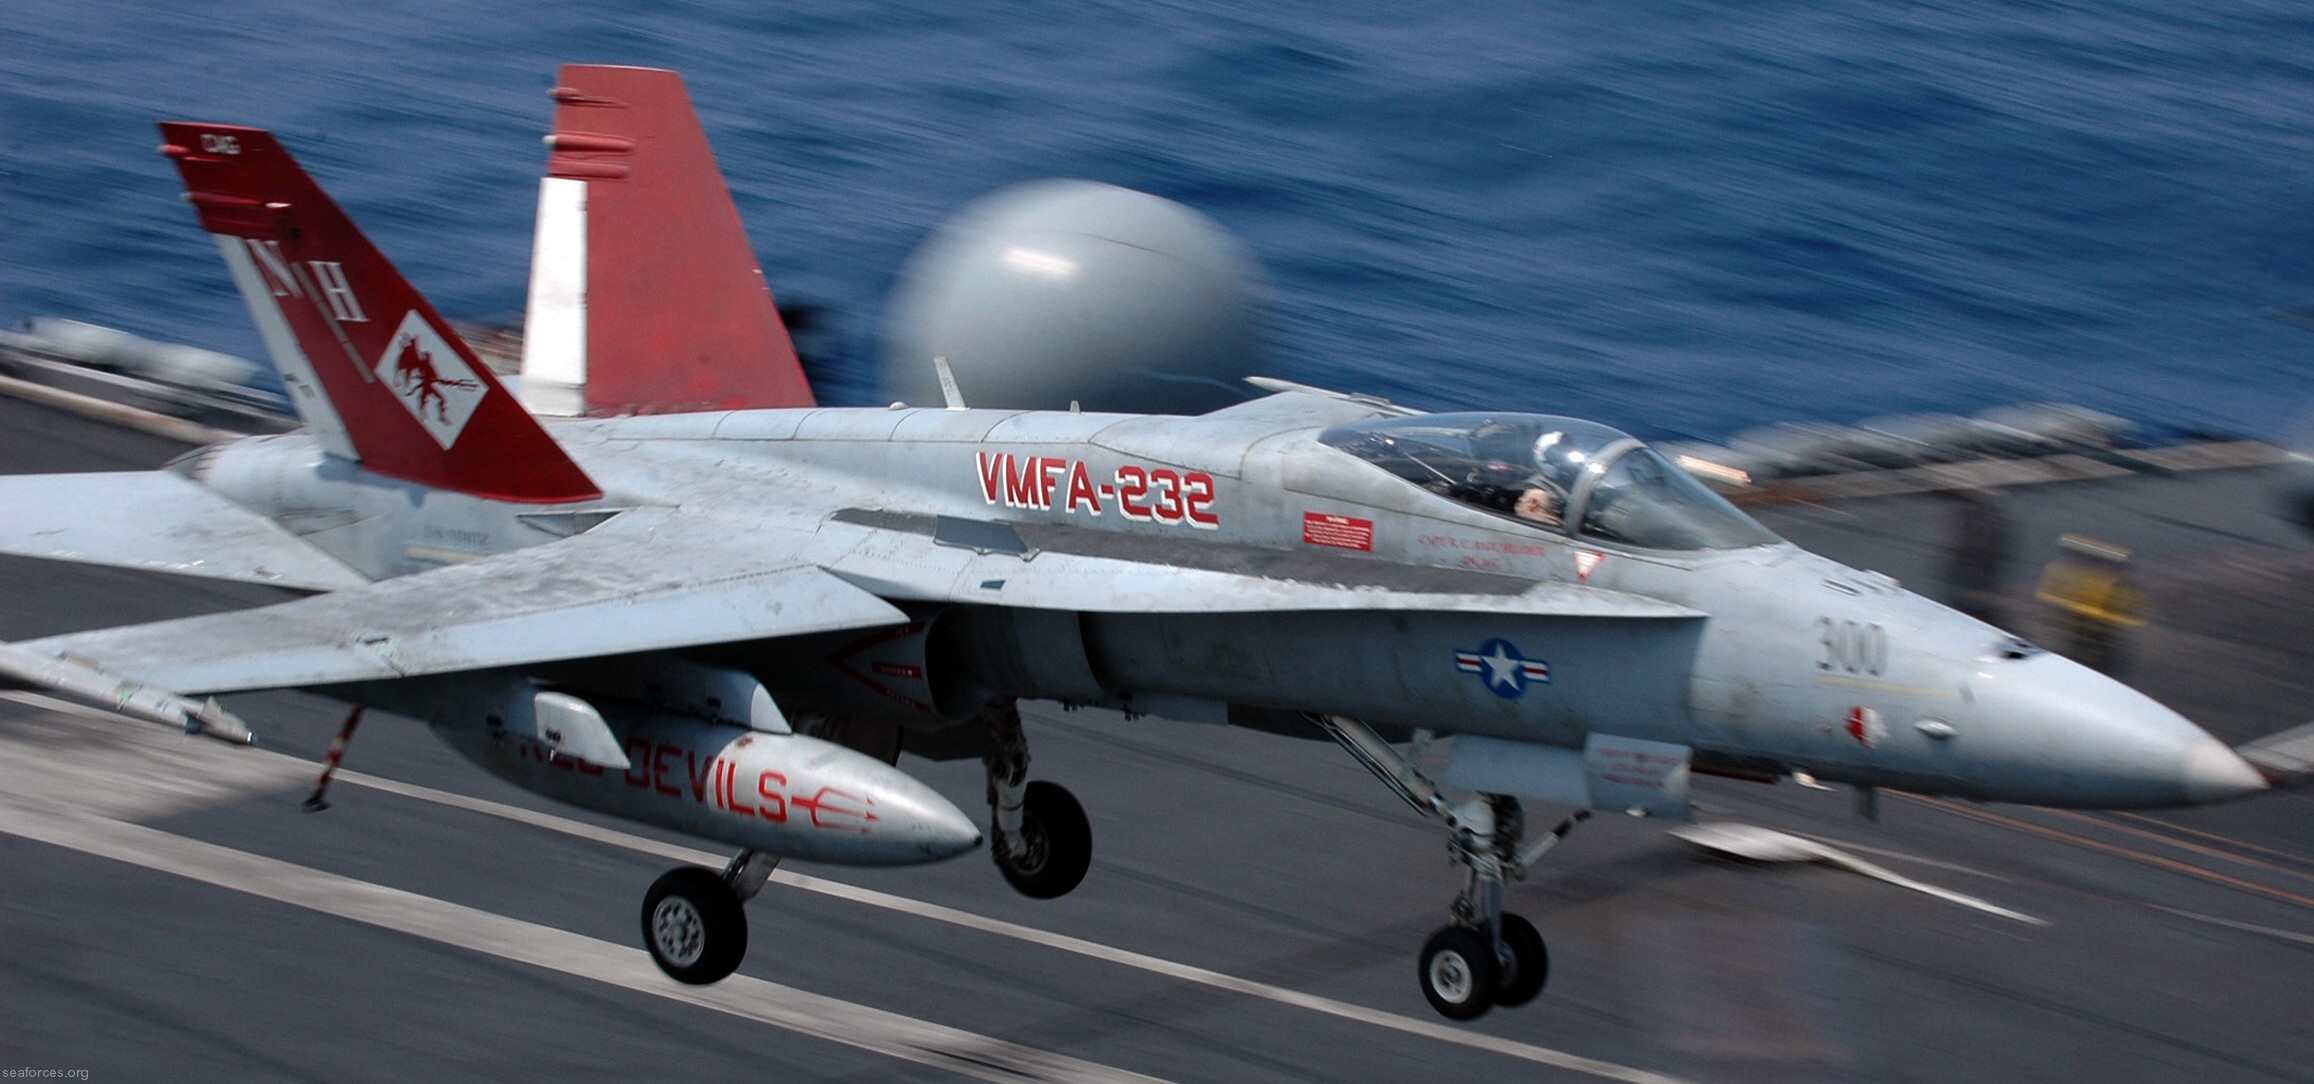 vmfa-232 red devils marine fighter attack squadron usmc f/a-18a+ hornet 06